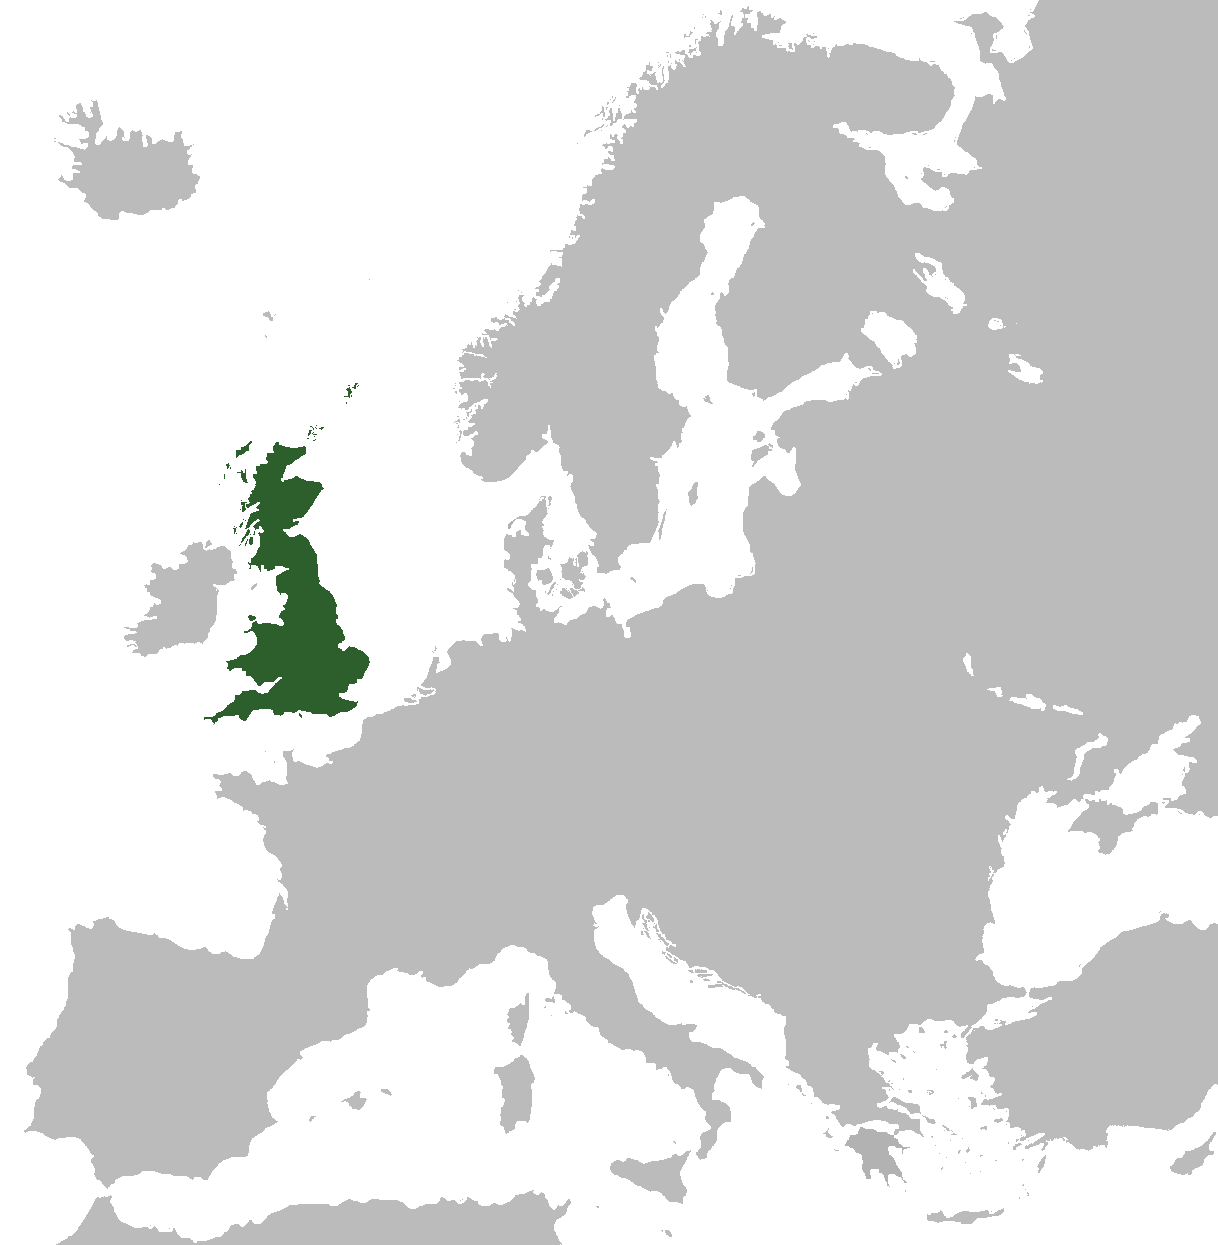 British State